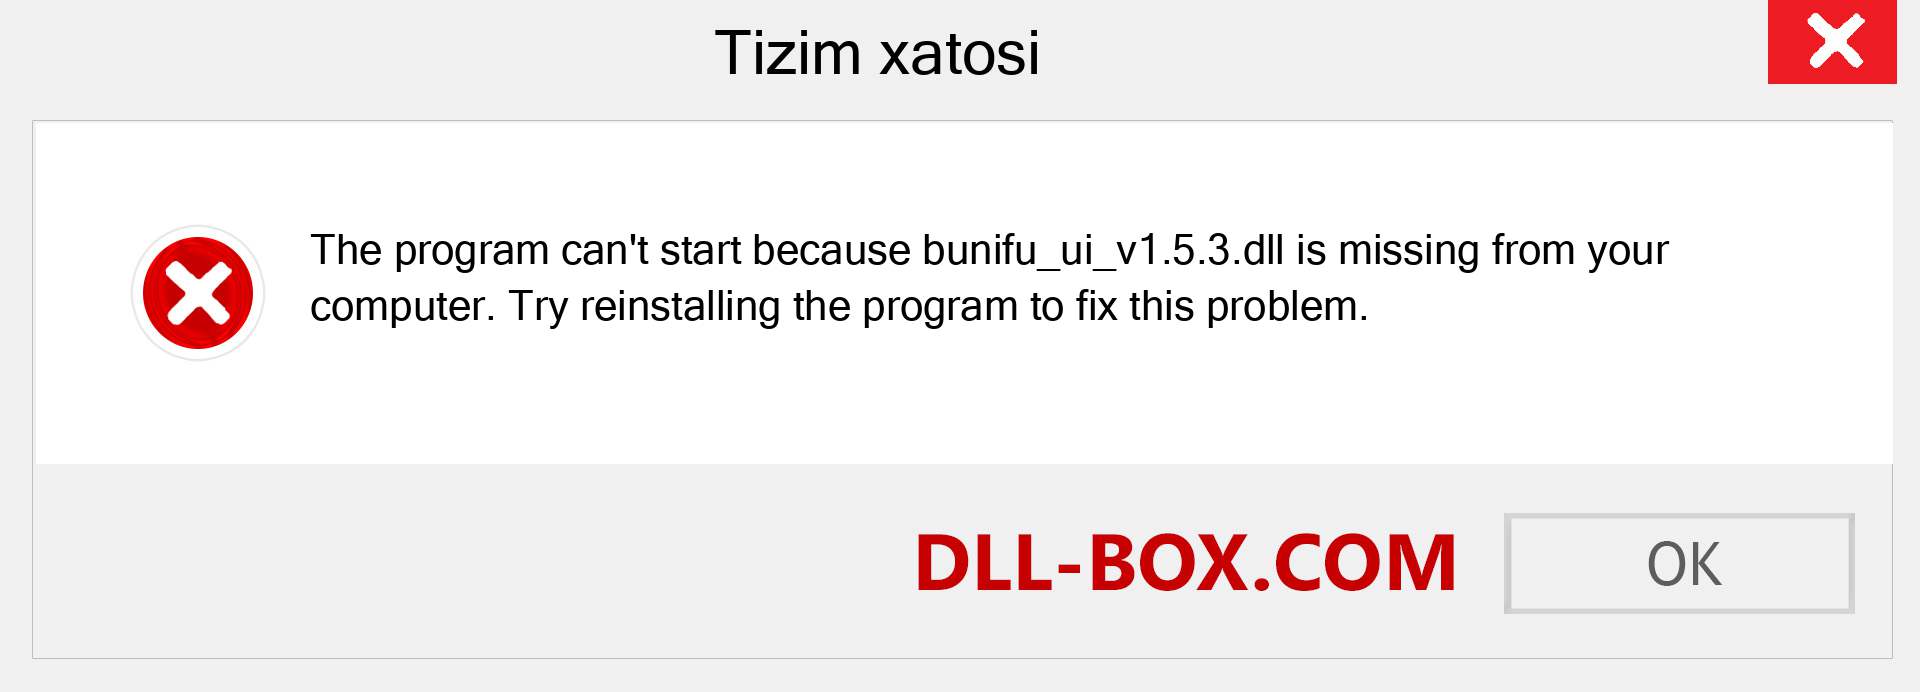 bunifu_ui_v1.5.3.dll fayli yo'qolganmi?. Windows 7, 8, 10 uchun yuklab olish - Windowsda bunifu_ui_v1.5.3 dll etishmayotgan xatoni tuzating, rasmlar, rasmlar